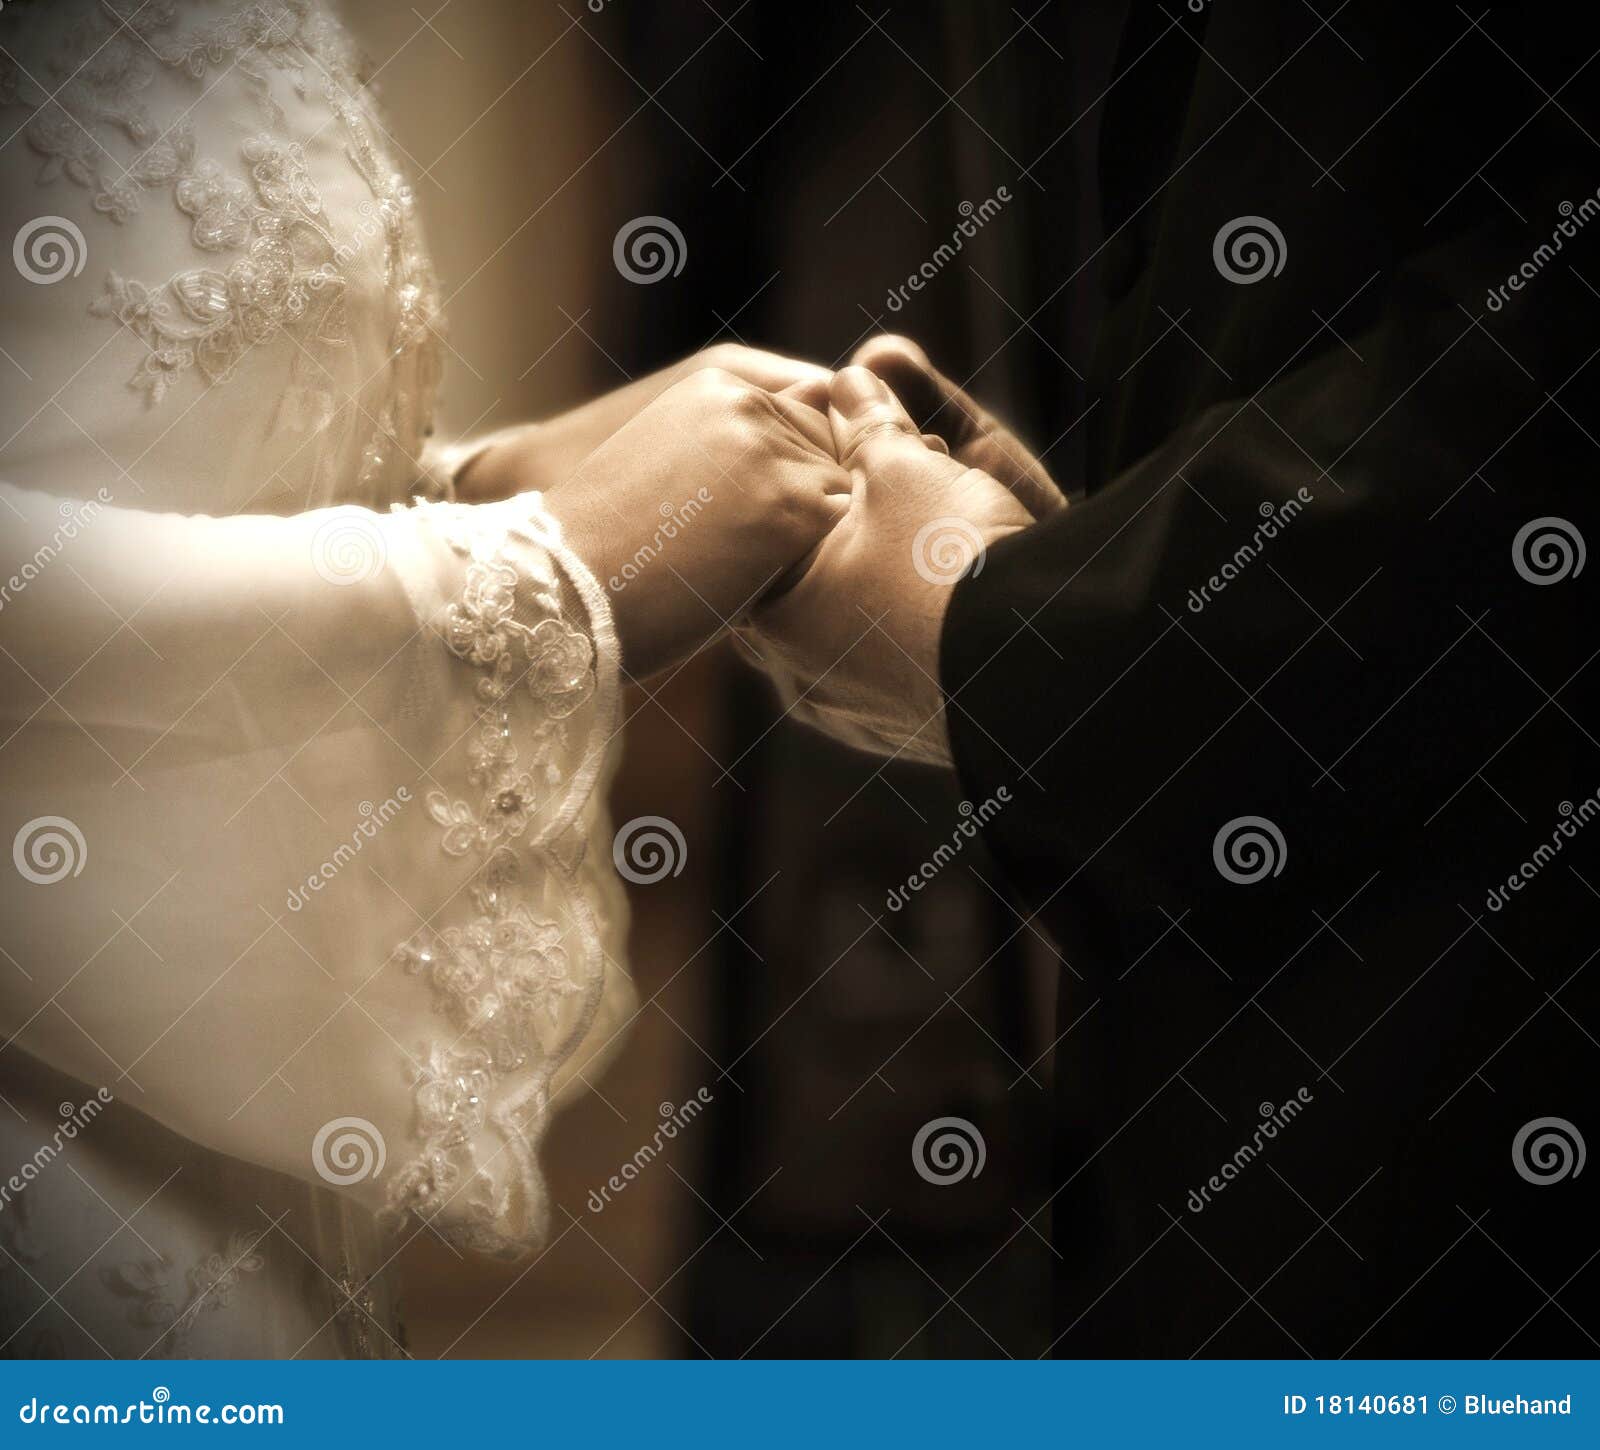 hands in wedding ceremony